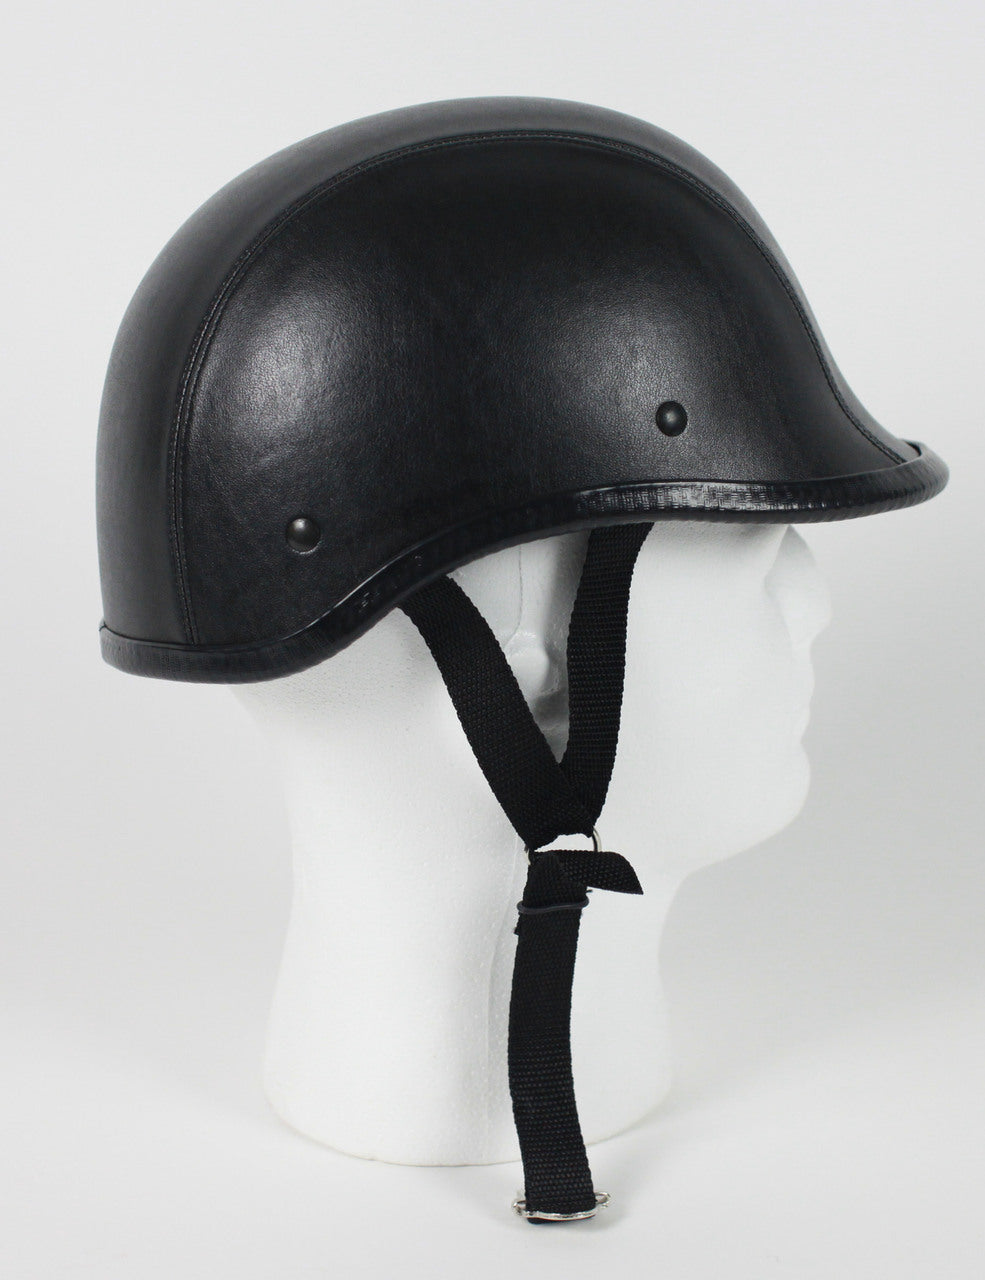 Rodia Leather Jockey Polo Novelty Motorcycle Helmet